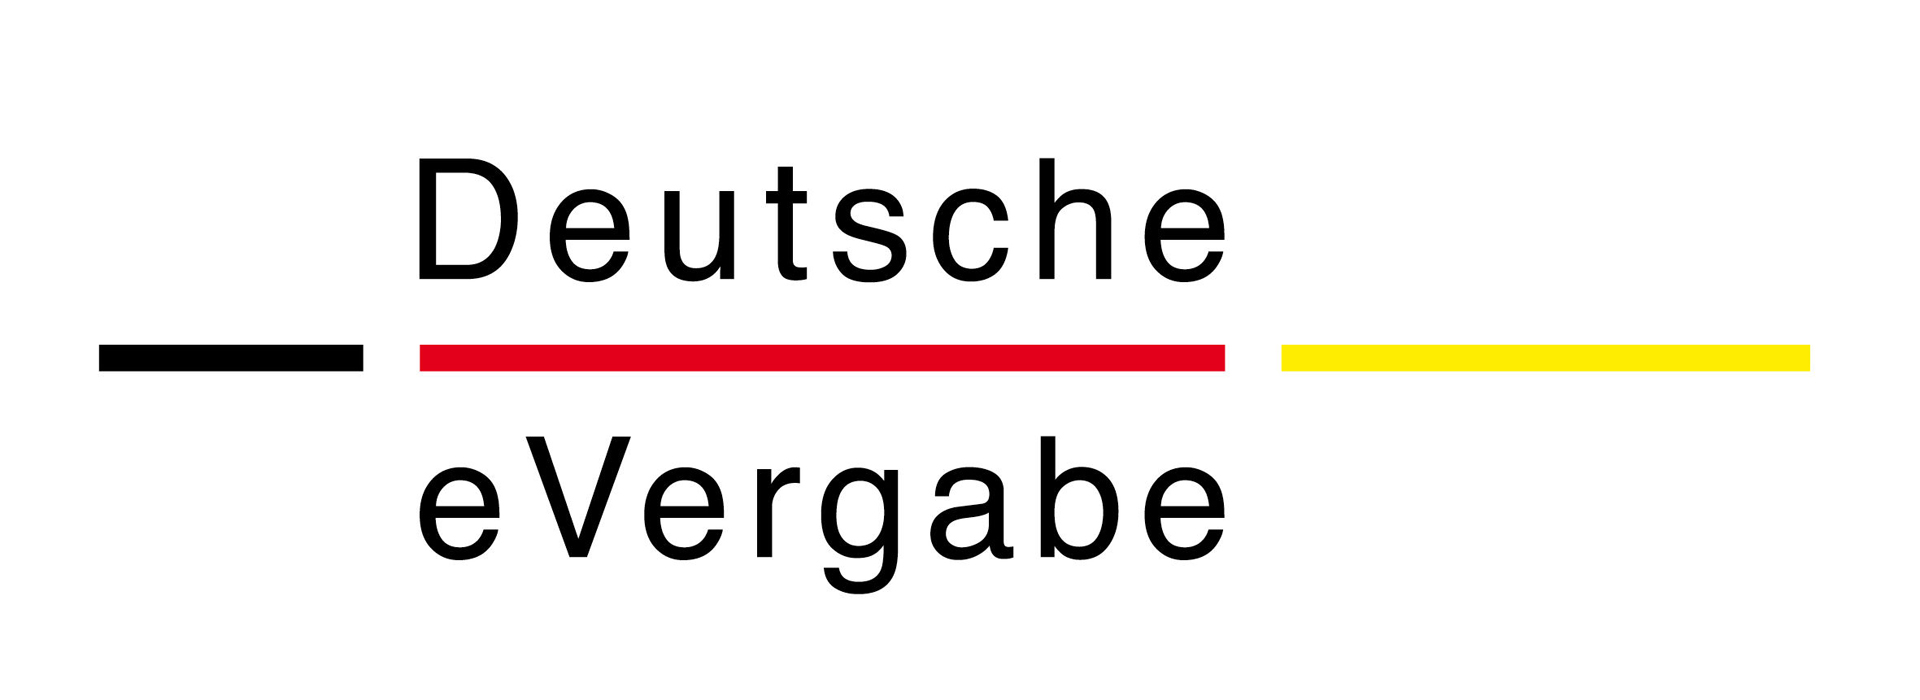 Logo der Deutschen eVergabe mit gleichnamigem Schriftzug.